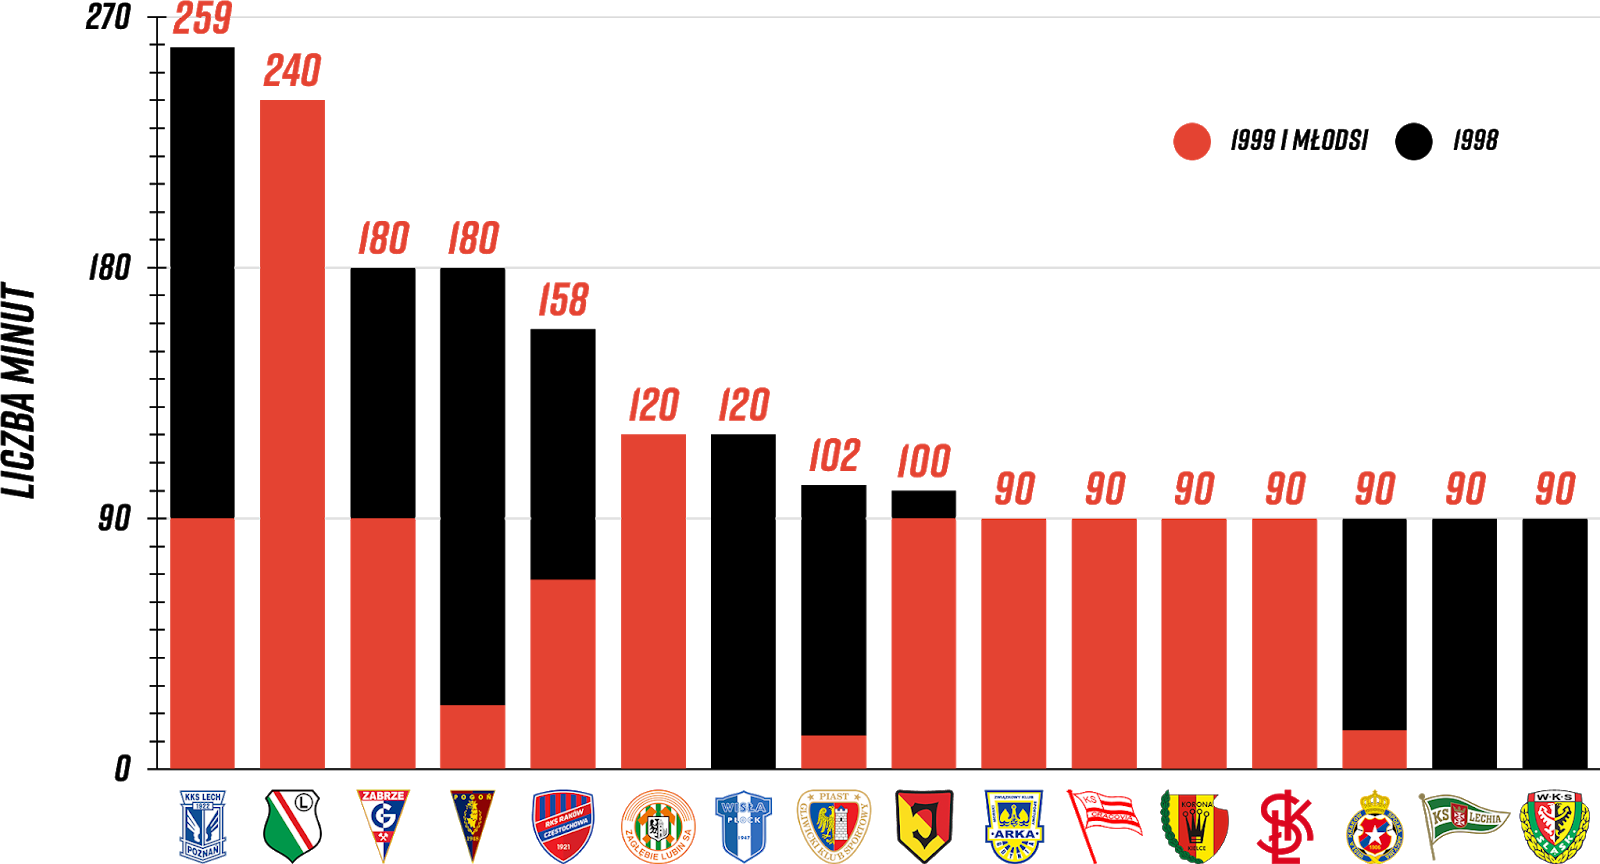 Klasyfikacja klubów pod względem rozegranych minut przez młodzieżowców w 6. kolejce PKO Ekstraklasy<br><br>Źródło: Opracowanie własne na podstawie ekstrastats.pl i 90minut.pl<br><br>graf. Bartosz Urban